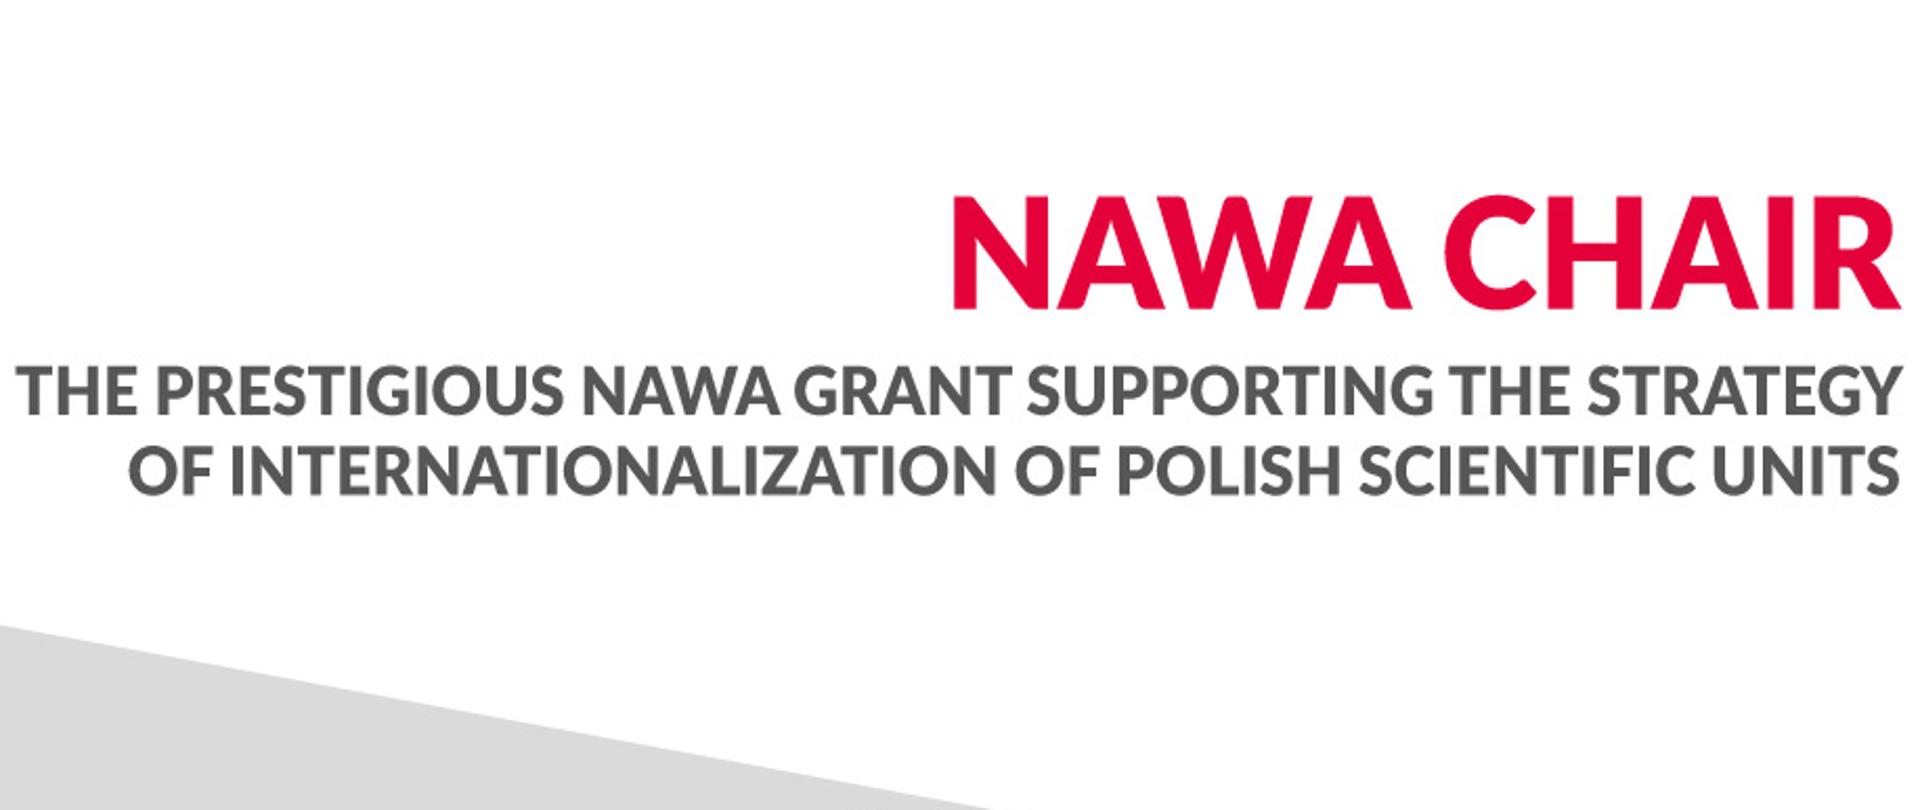 NAWA Chair programme